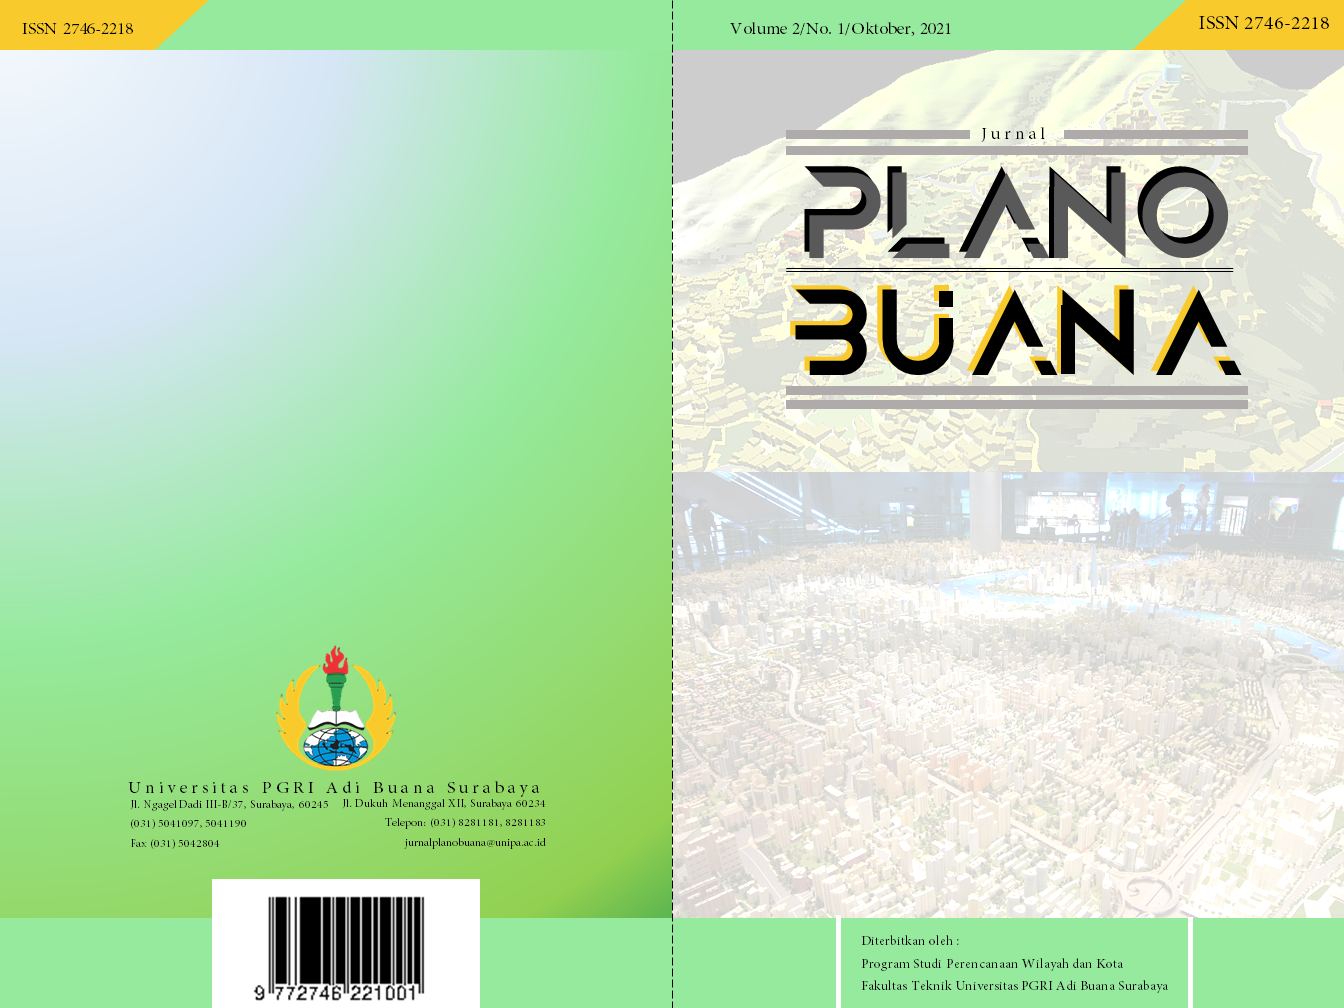 					View Vol. 2 No. 1 (2021): Jurnal Plano Buana (Edisi Oktober 2021)
				